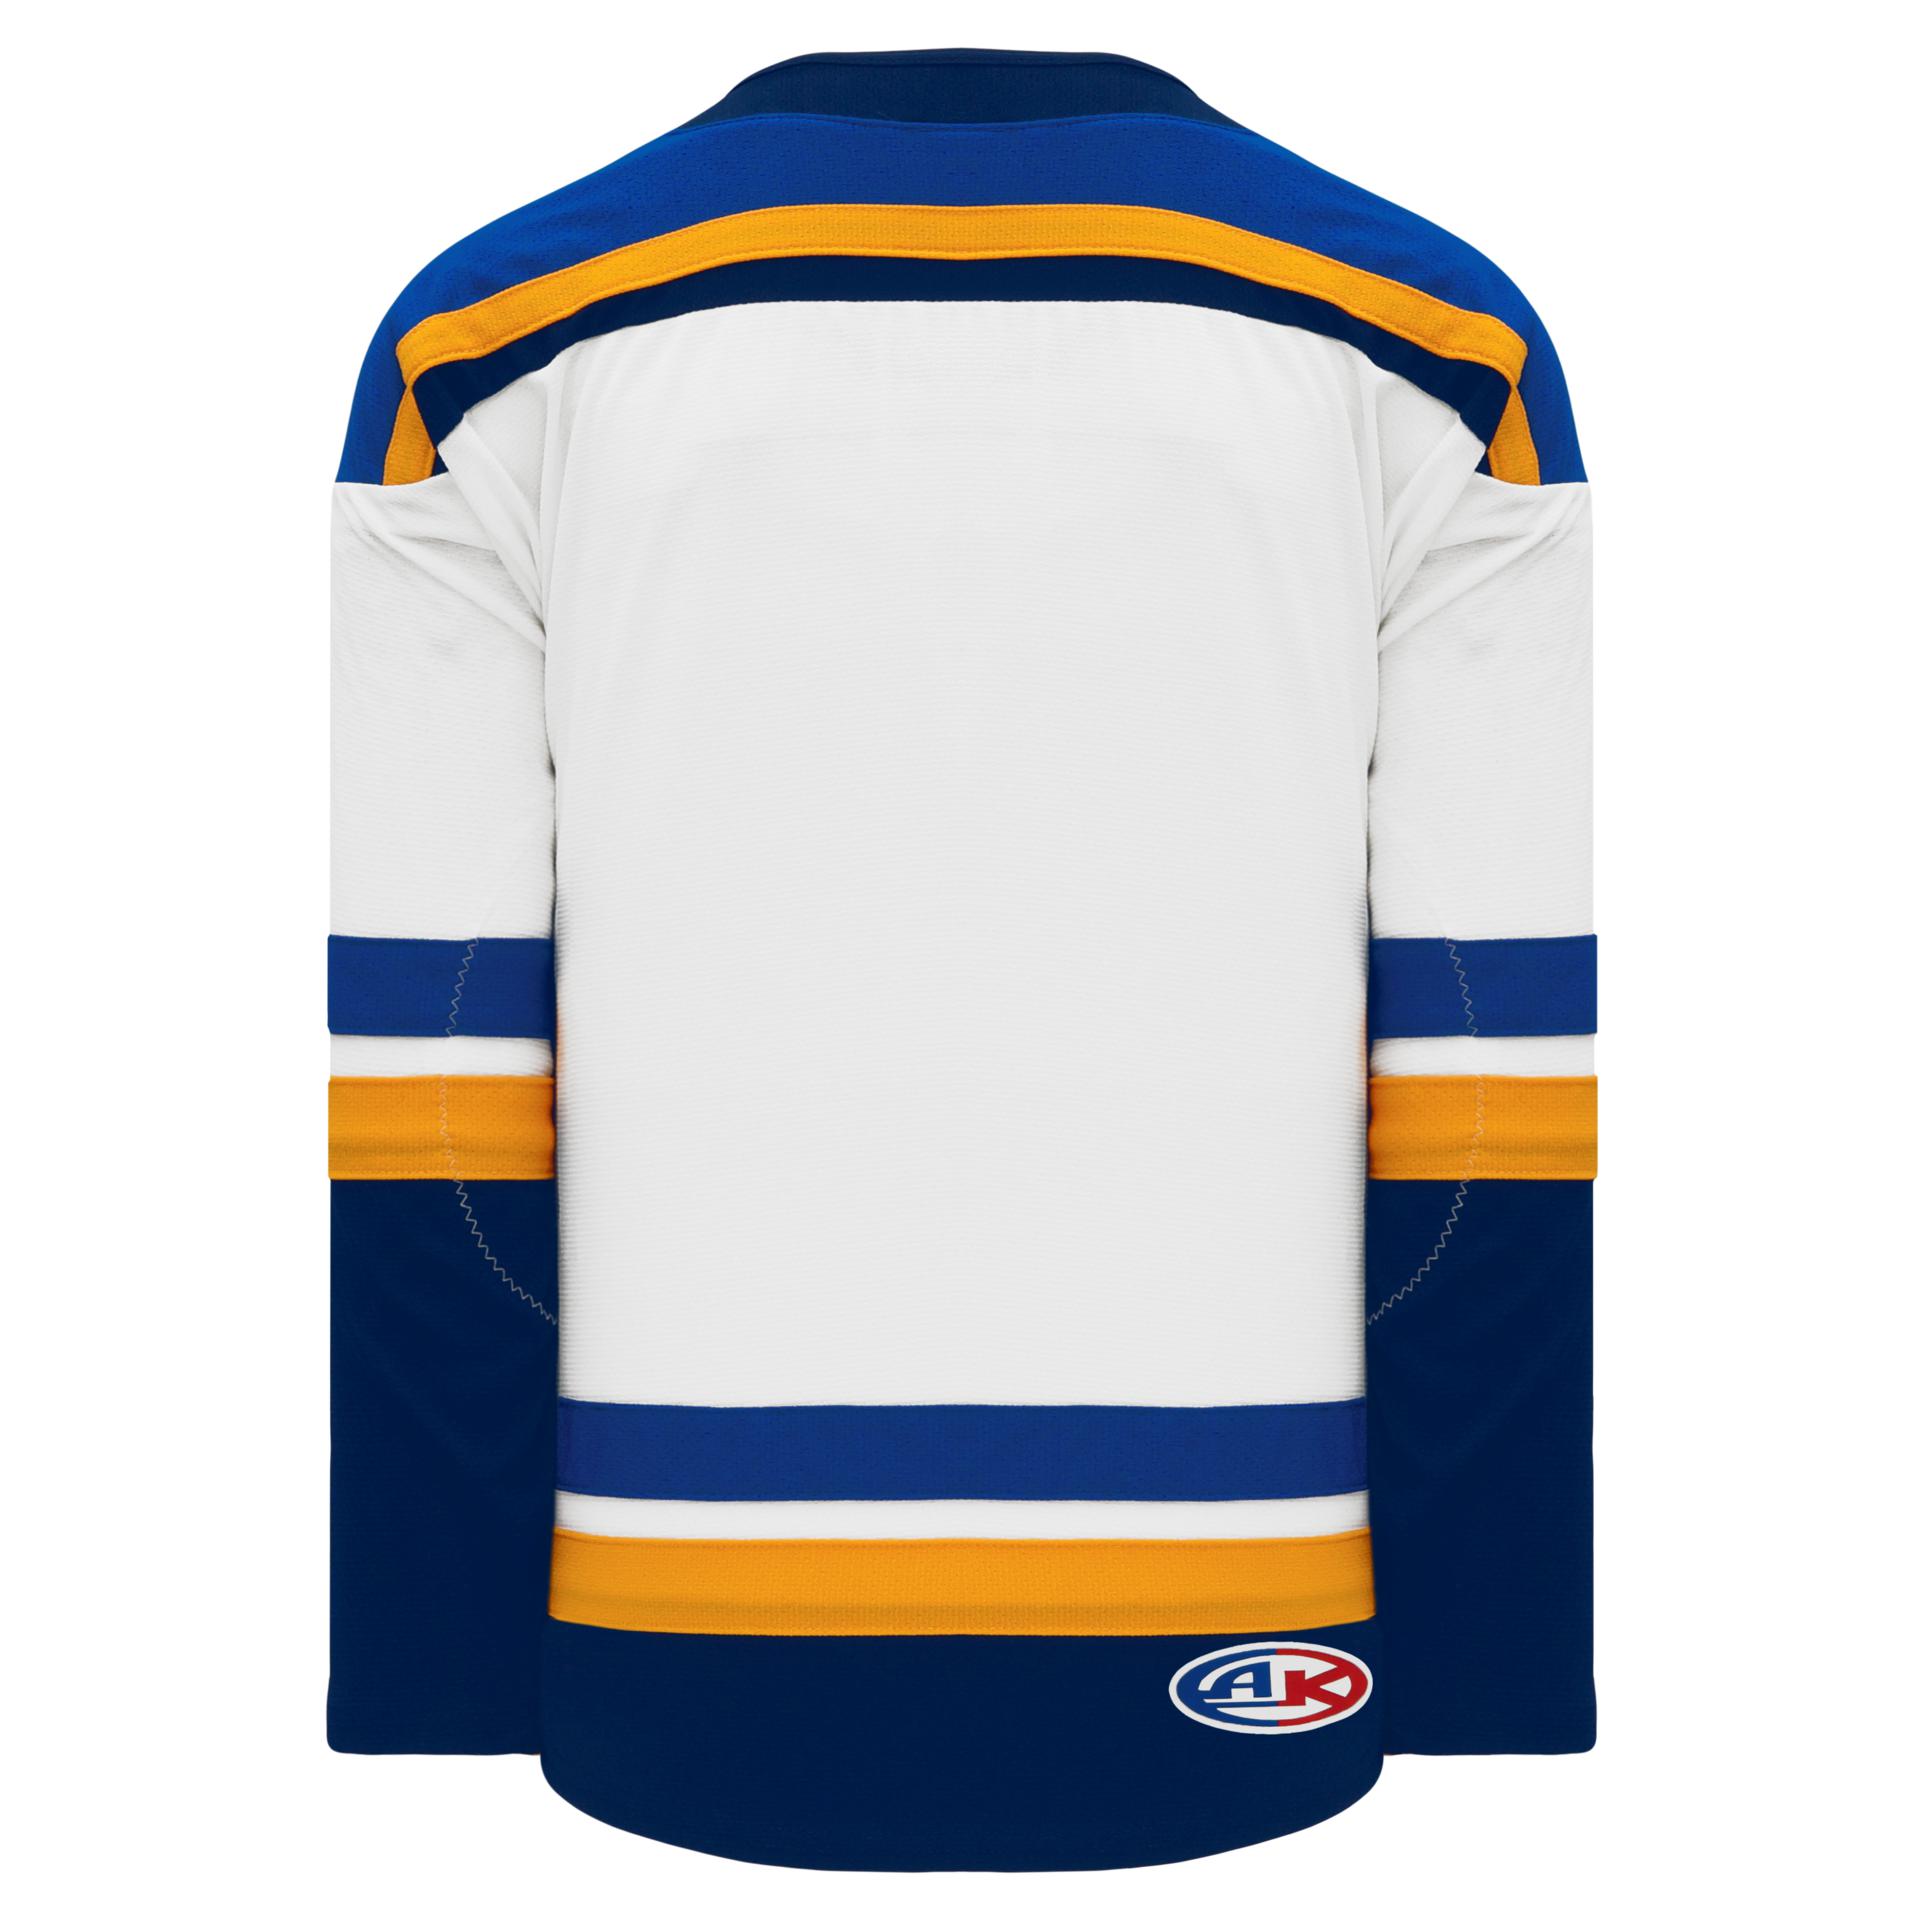 NHL - St. Louis Blues Jersey Pin (BLSJPW)